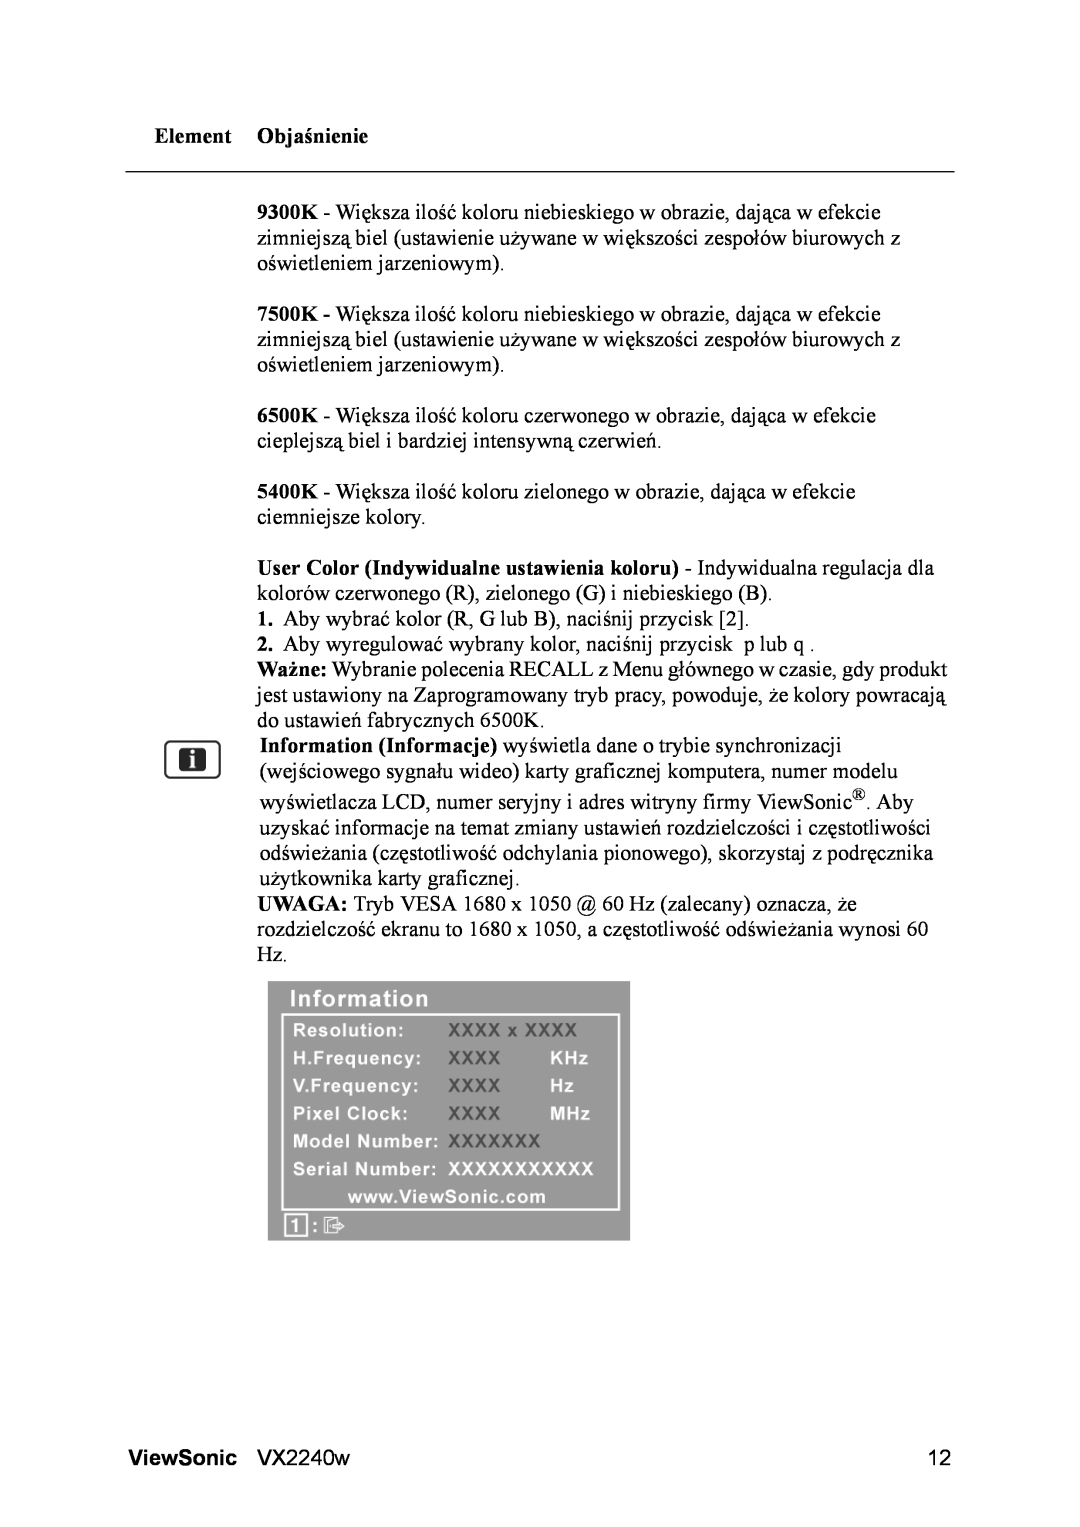 ViewSonic VS11985 manual Element Objaśnienie, Aby wybrać kolor R, G lub B, naciśnij przycisk, ViewSonic VX2240w 